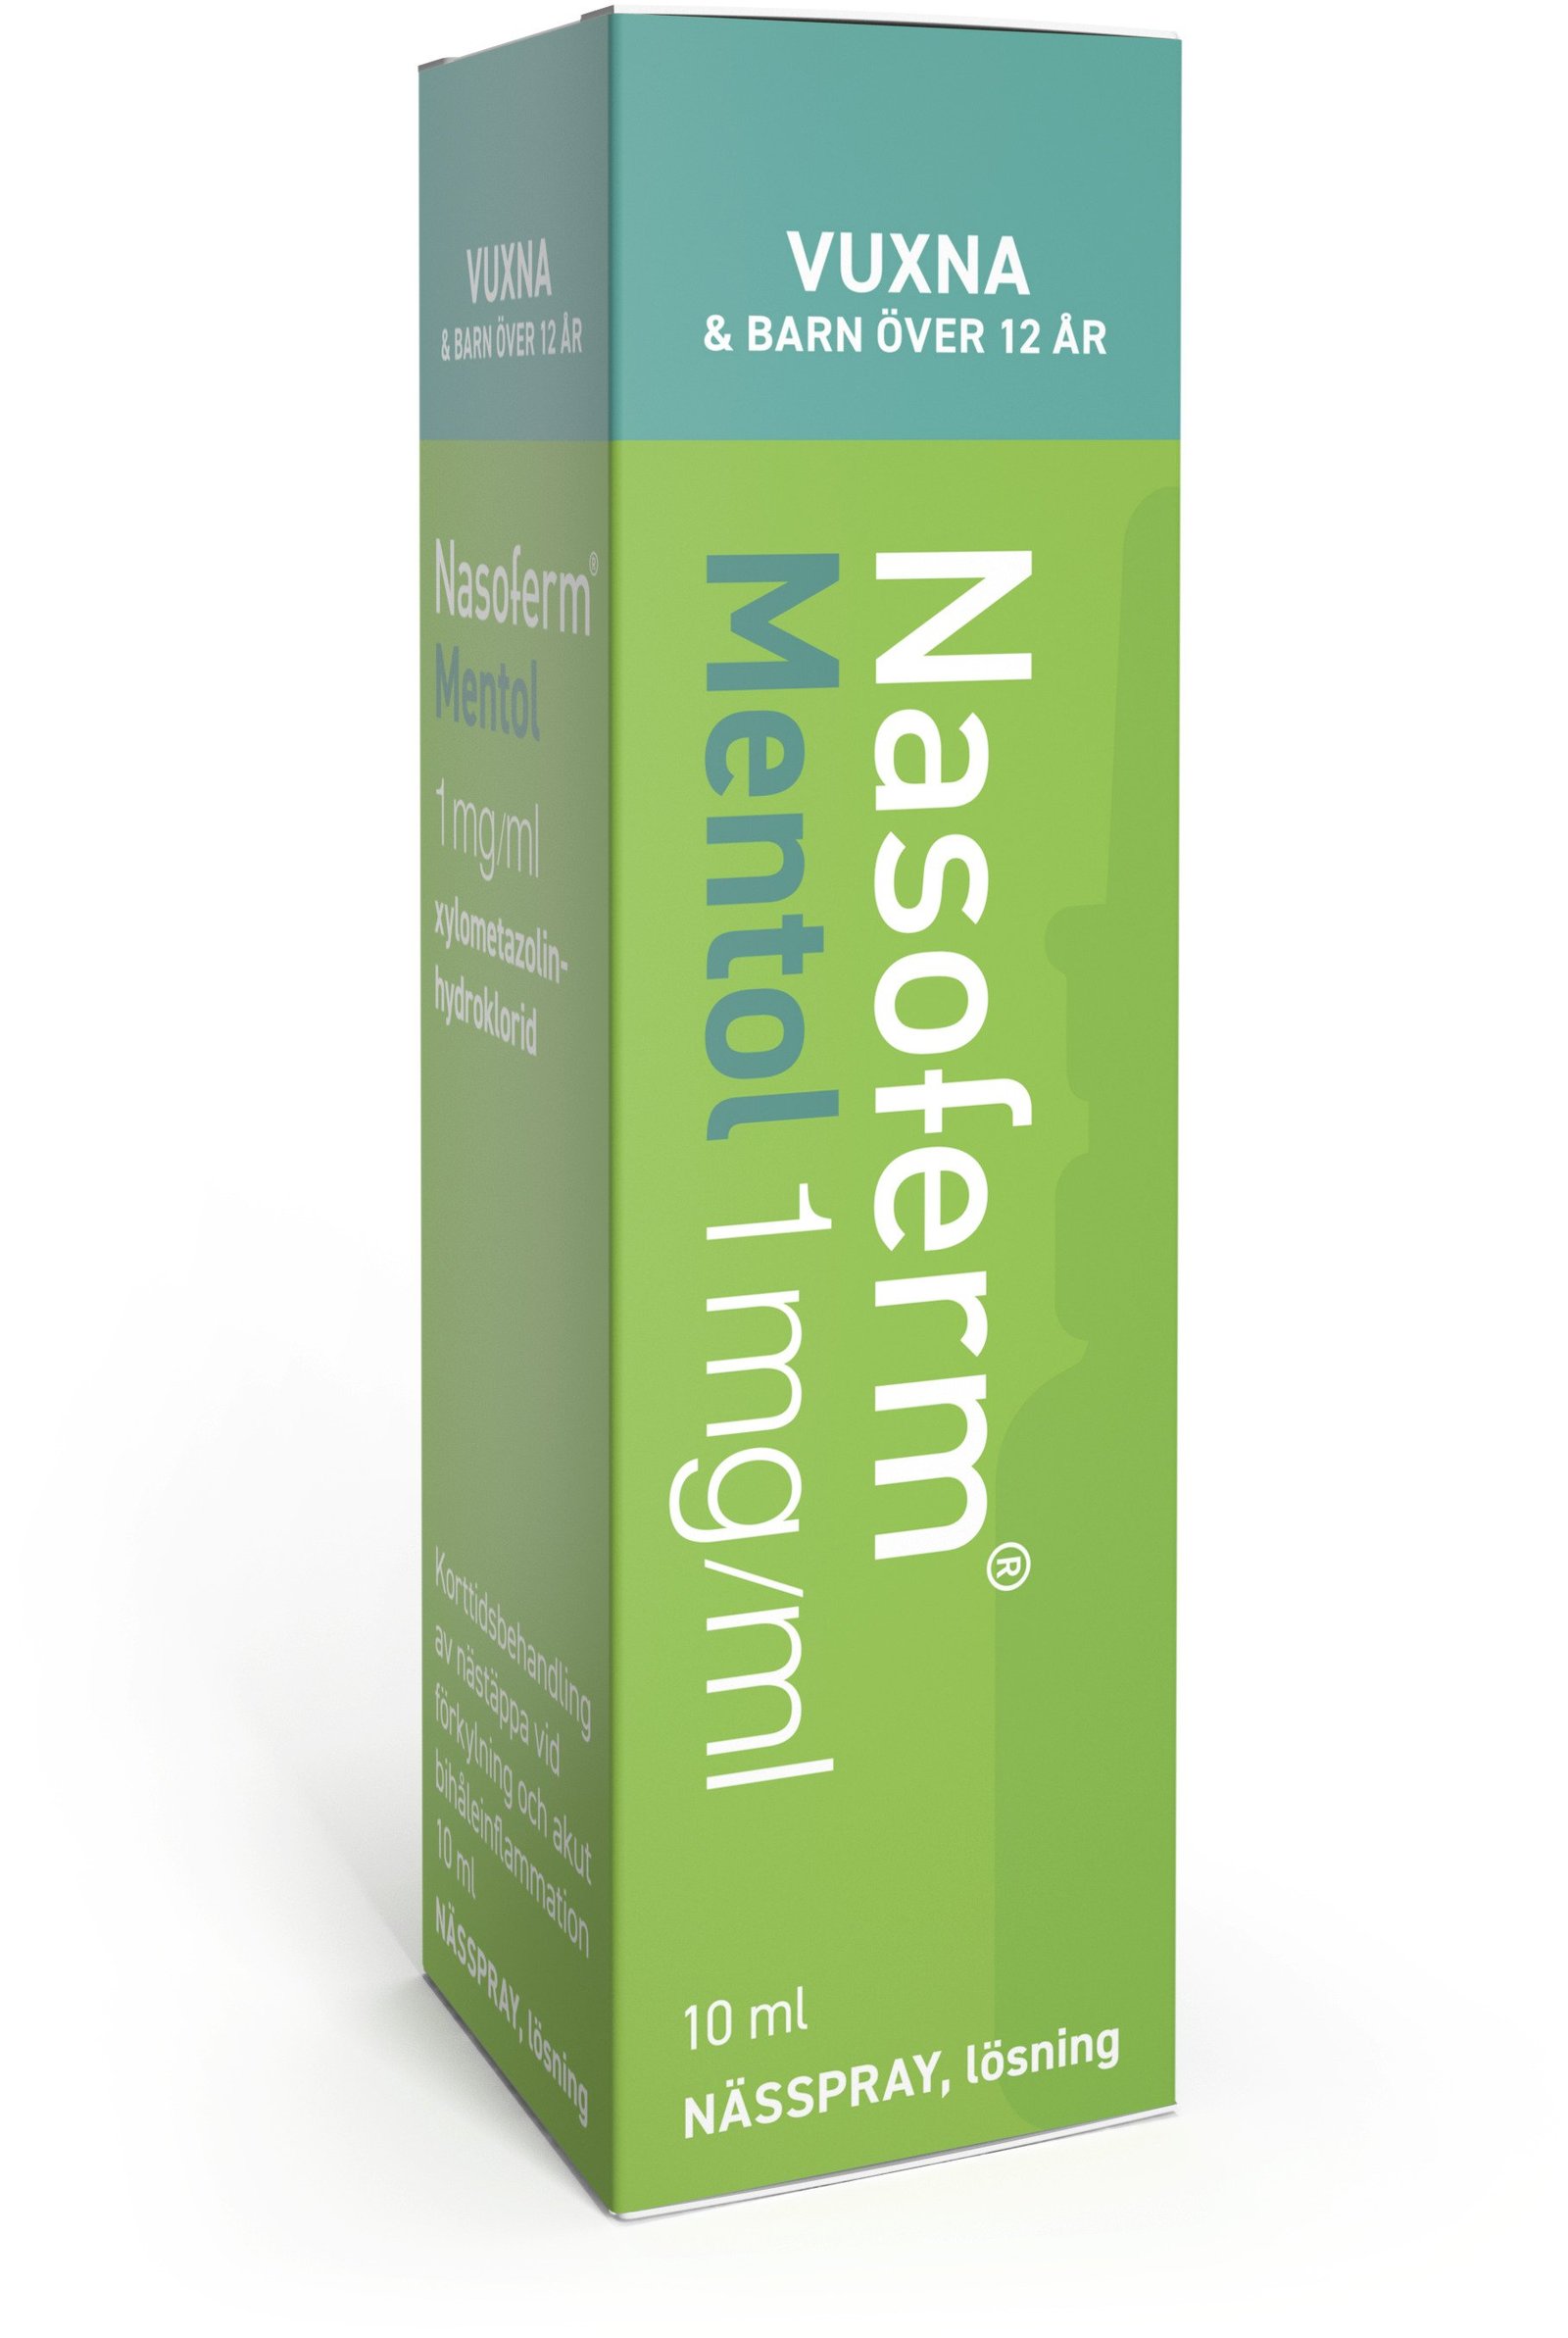 Nasoferm Mentol 1 mg/ml Nässpray 10 ml